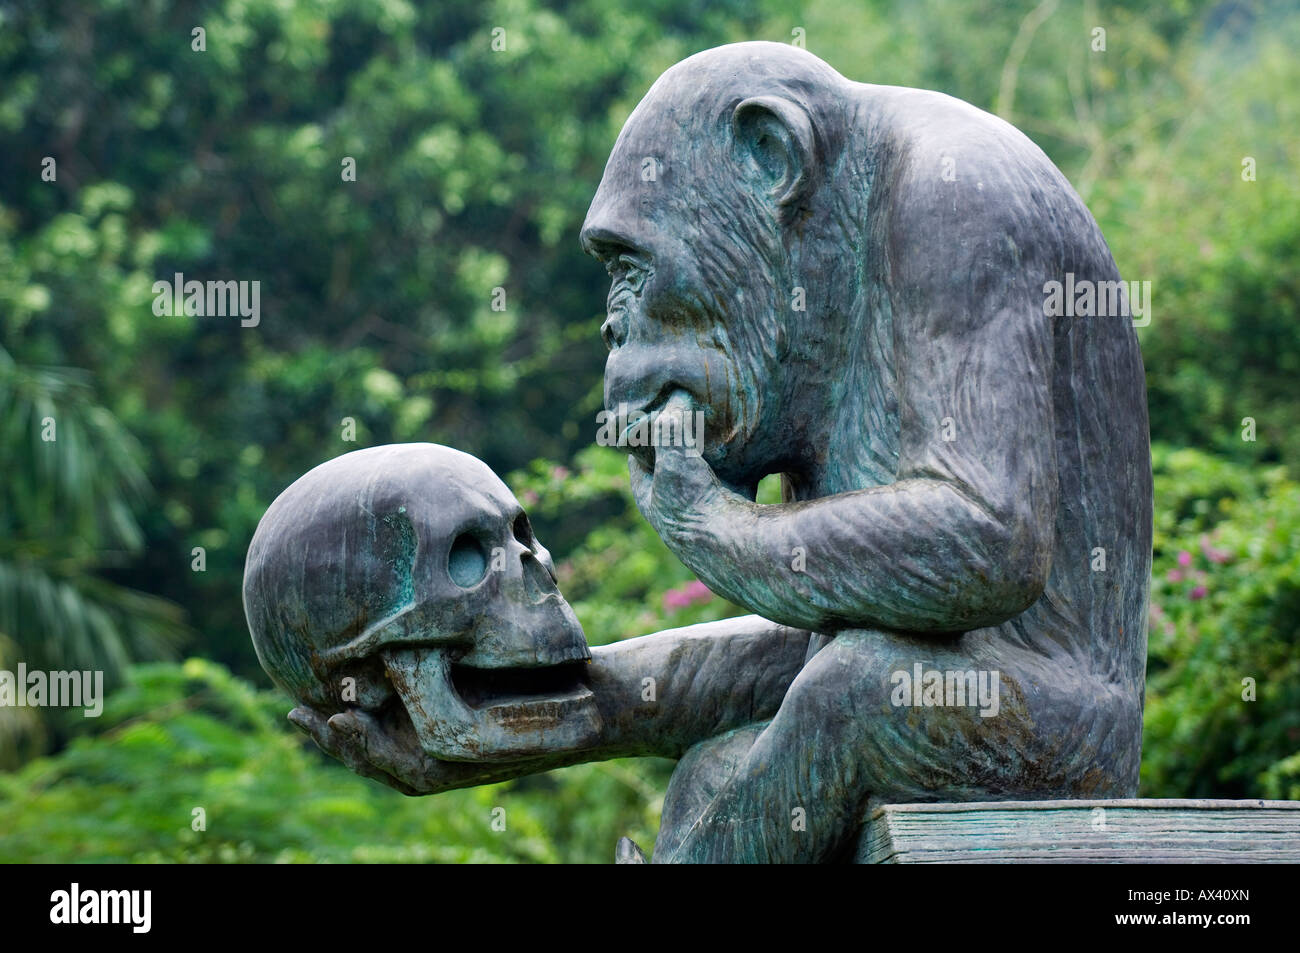 Cina, Hainan Provincia, Hainan Island, Monkey Island Research park - un gorilla di statua. Foto Stock